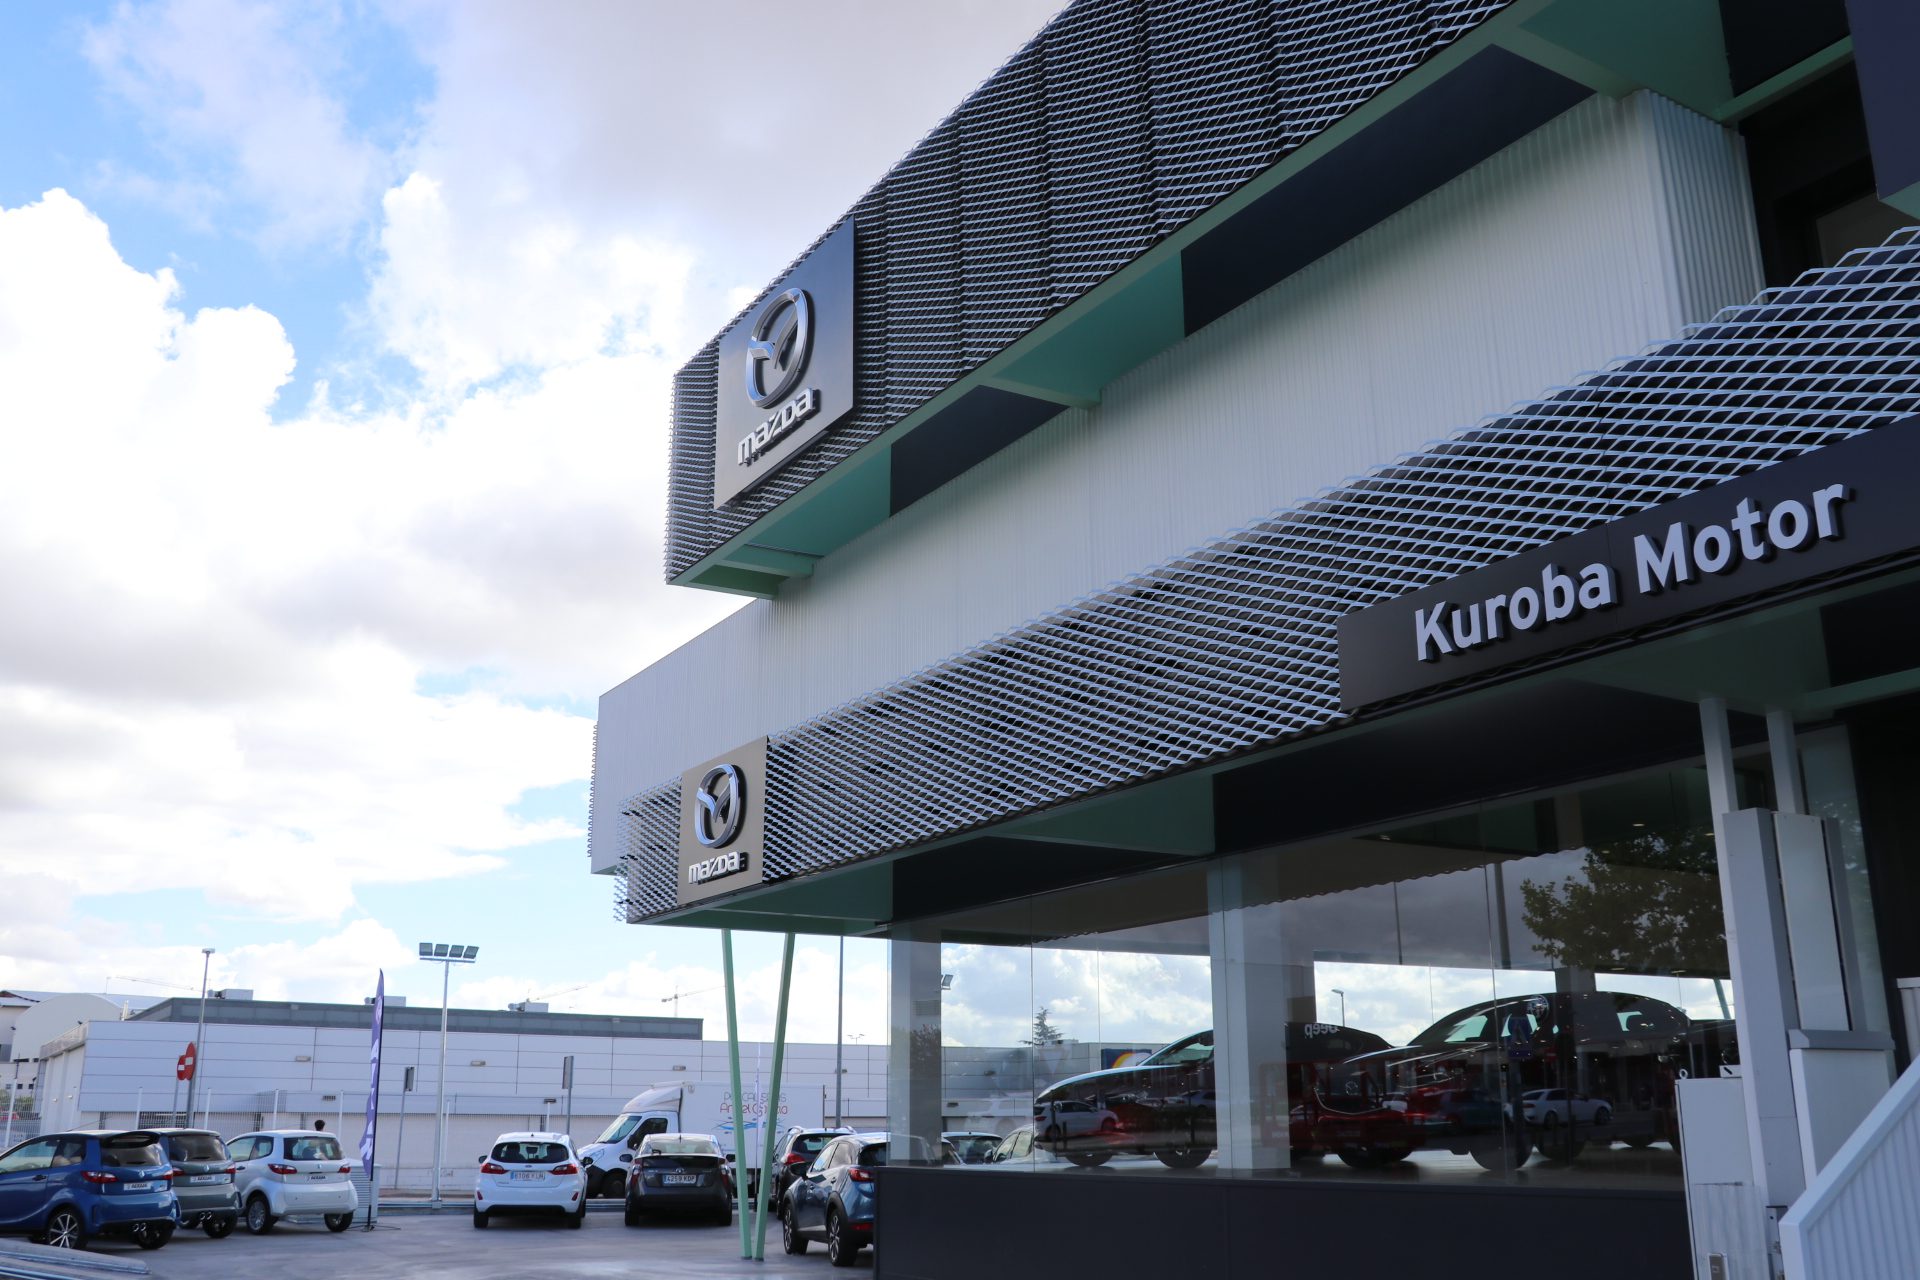 Mazda Kuroba Motor estrena nueva instalación